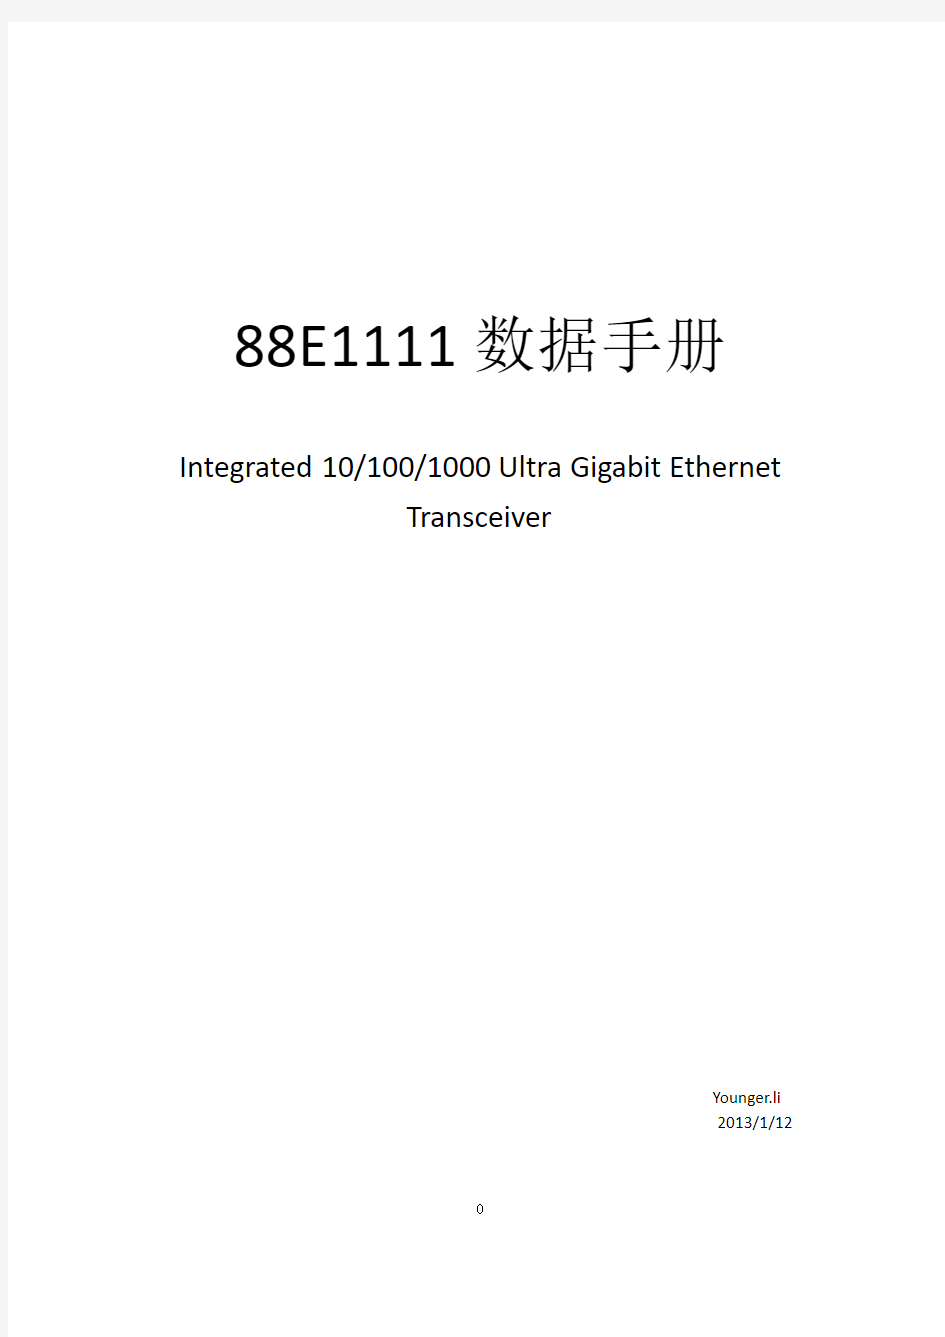 88E1111 数据手册(中文)-第一部分